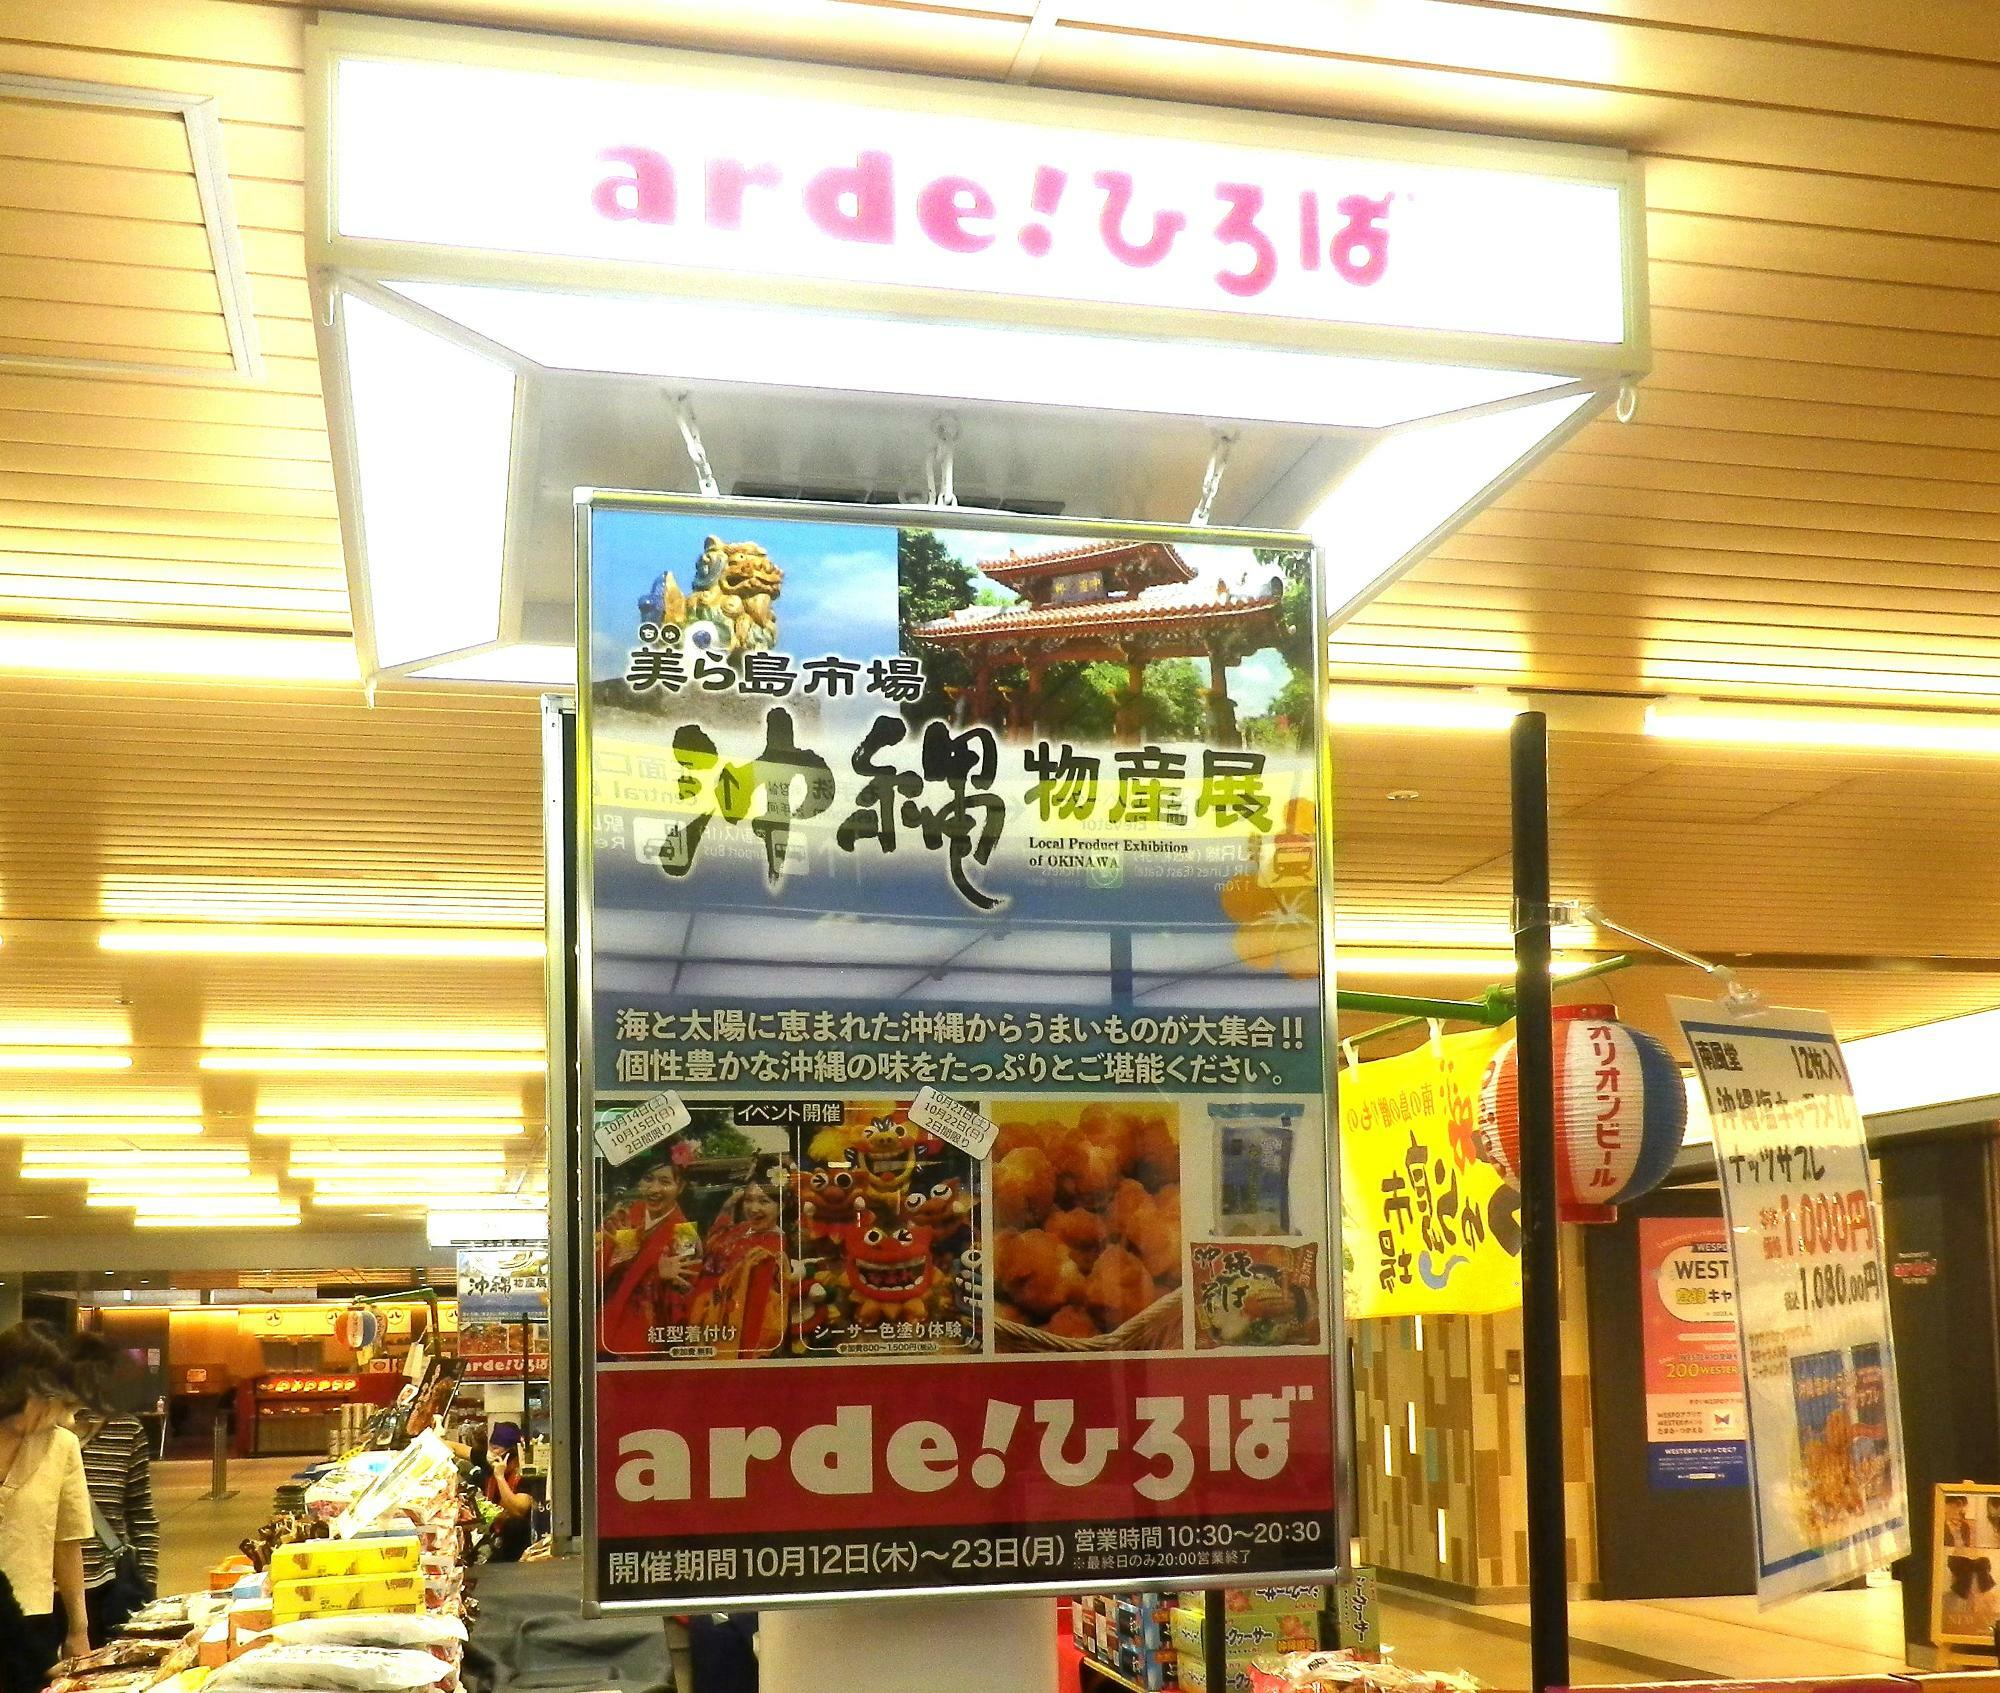 沖縄物産展「美ら島市場」のポスター。